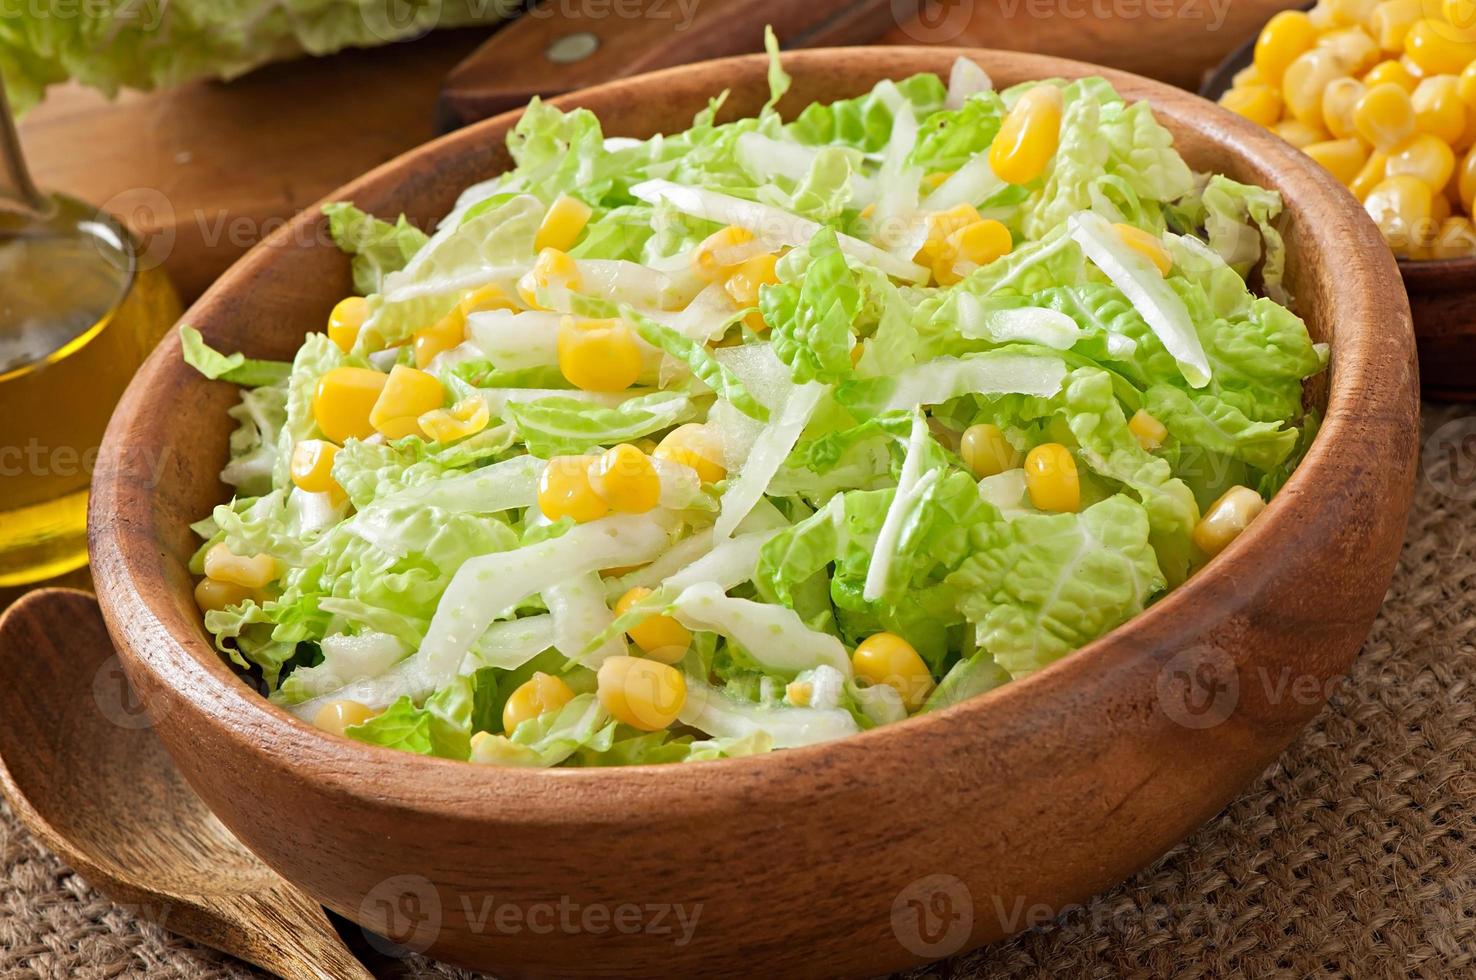 Salade de chou chinois au maïs sucré dans un bol en bois photo